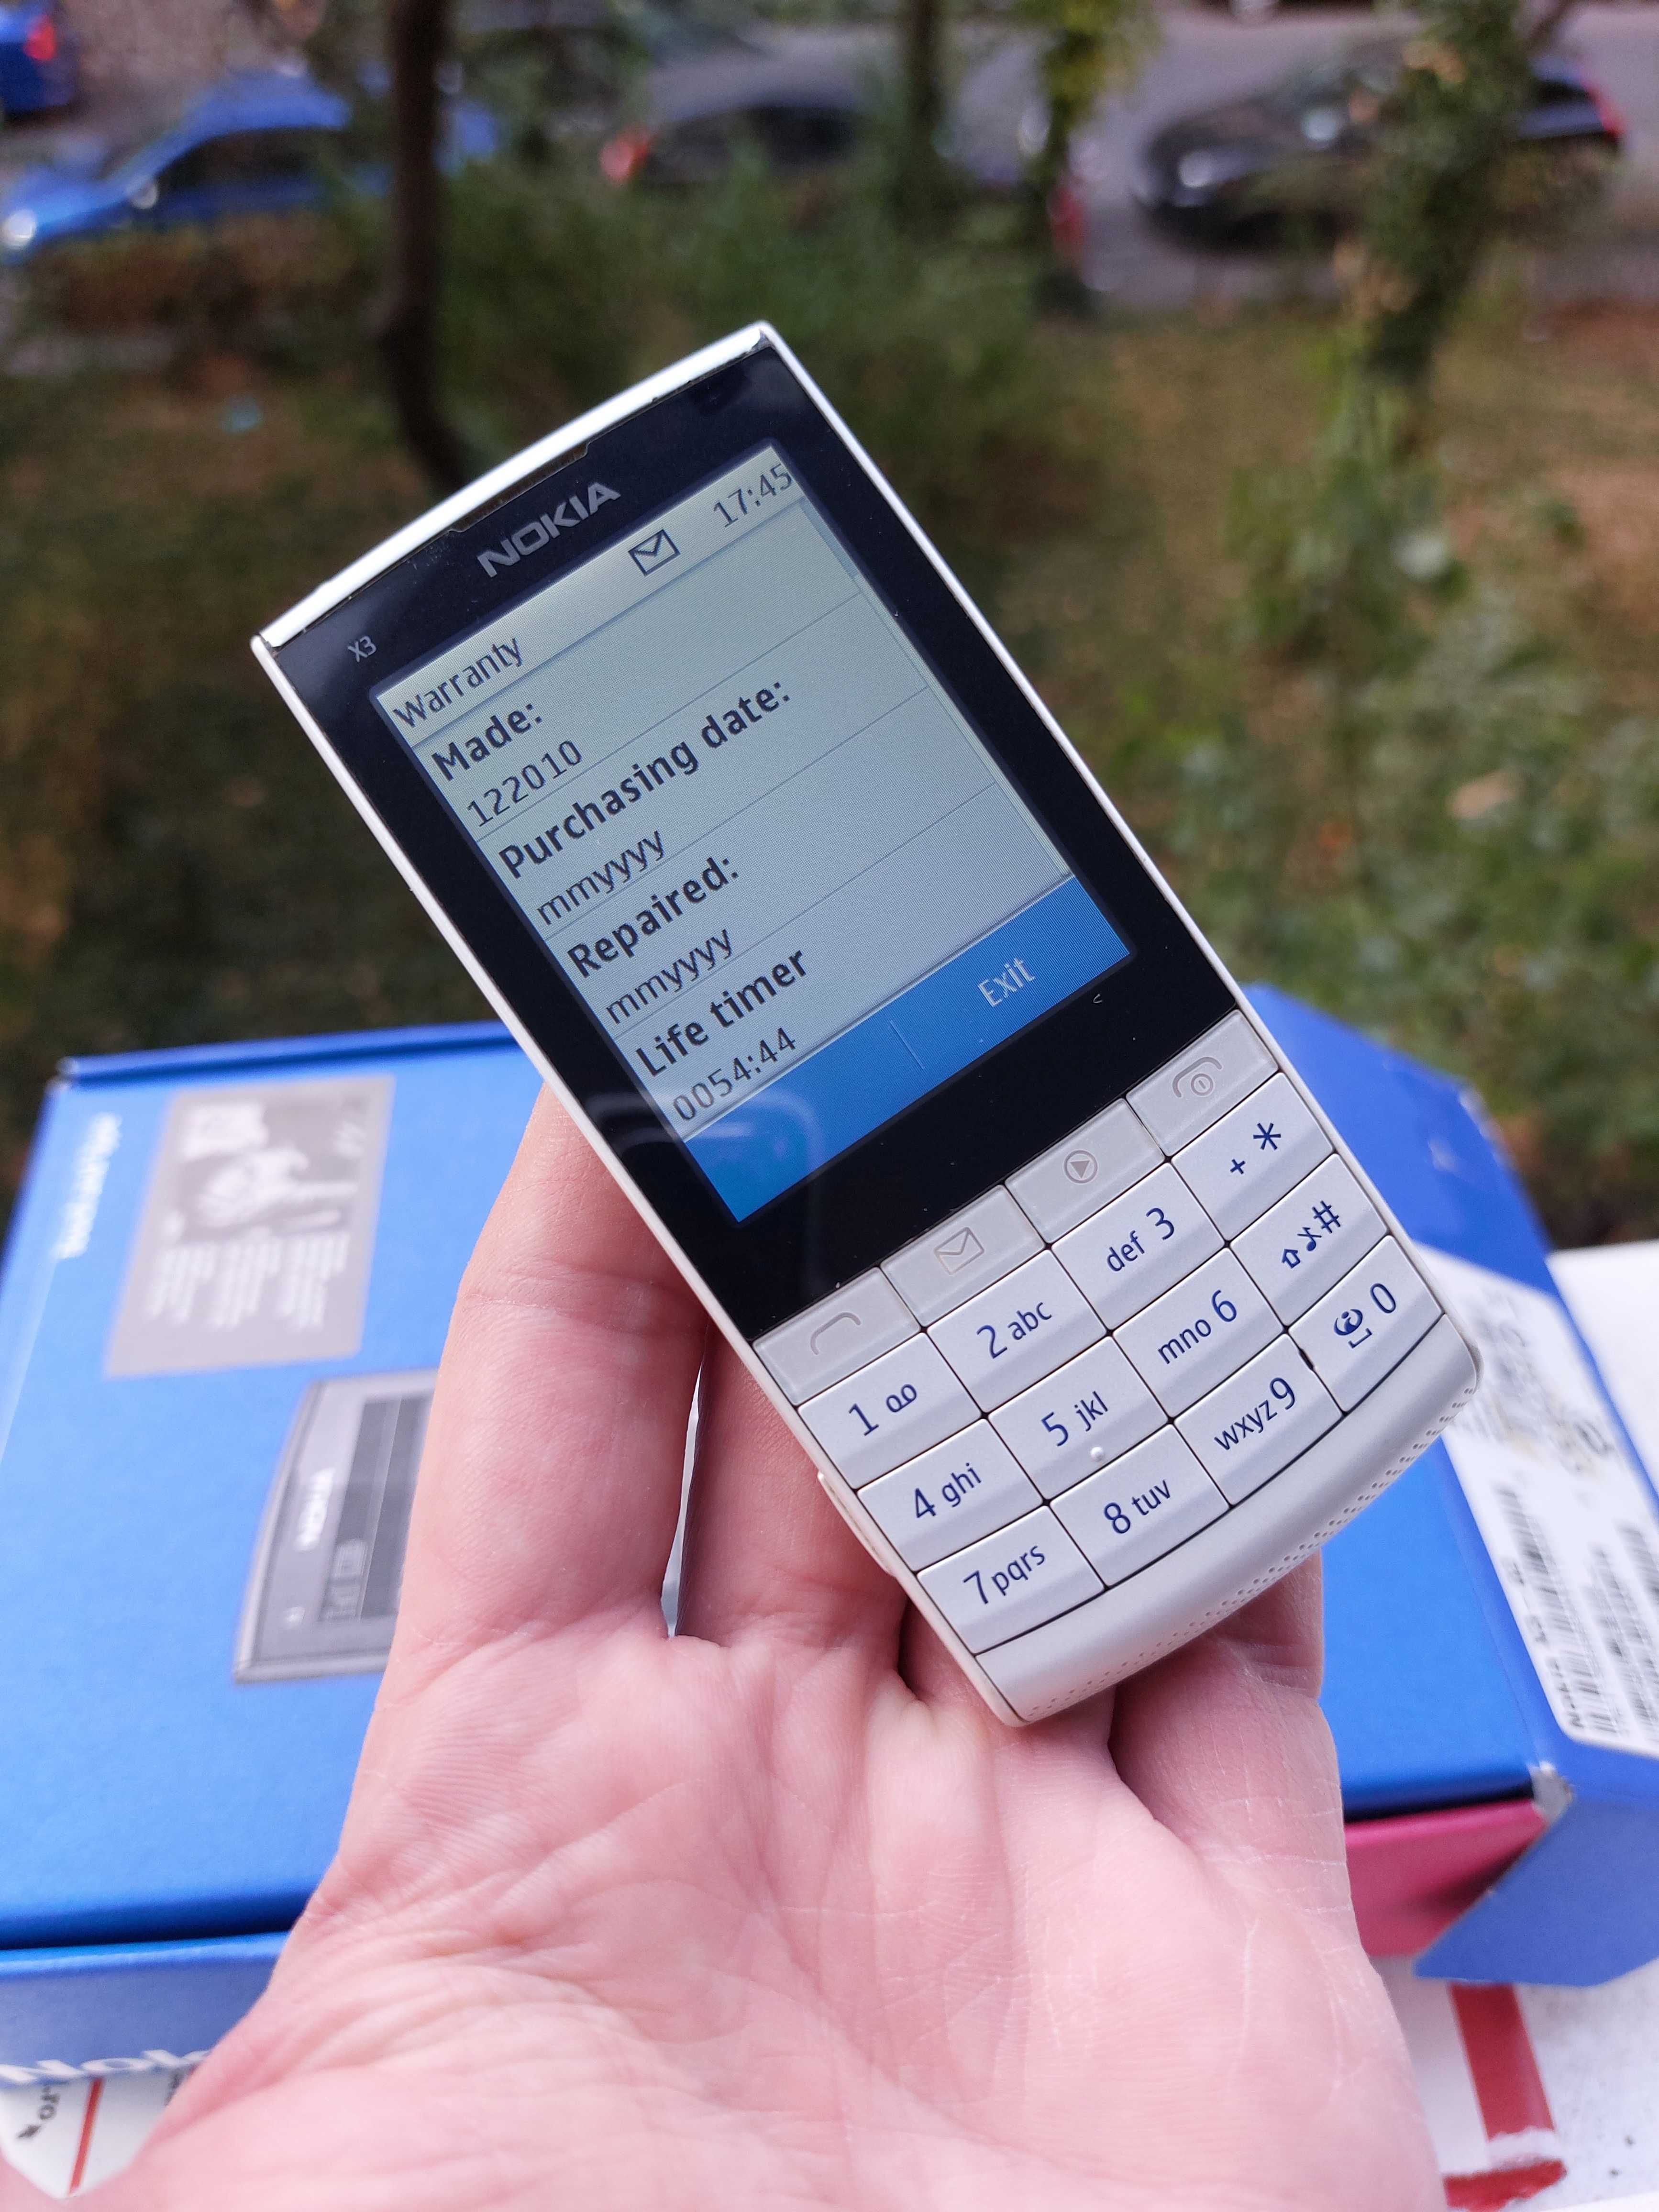 Nokia X3-02 original decodat cu doar 54 ore vorbite ca NOU la cutie